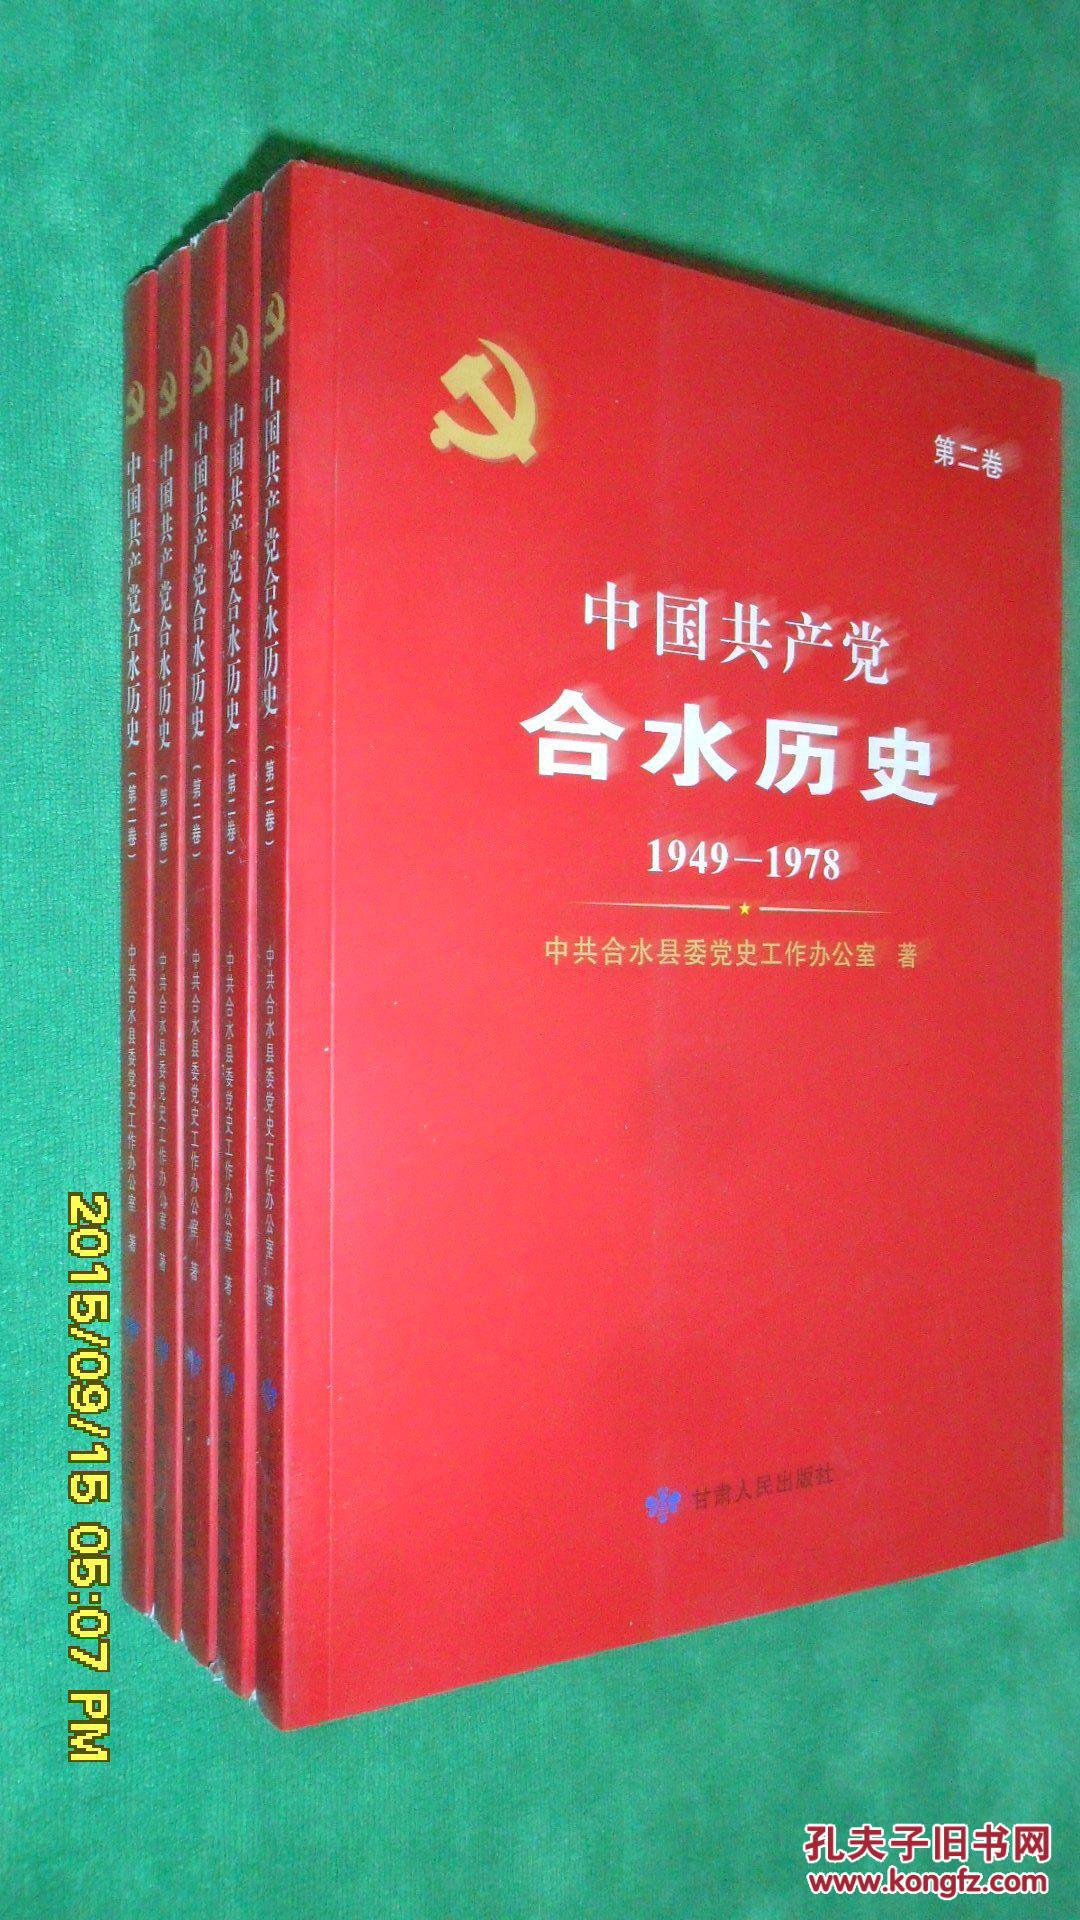 中国共产党合水历史(第二卷)1949-1978